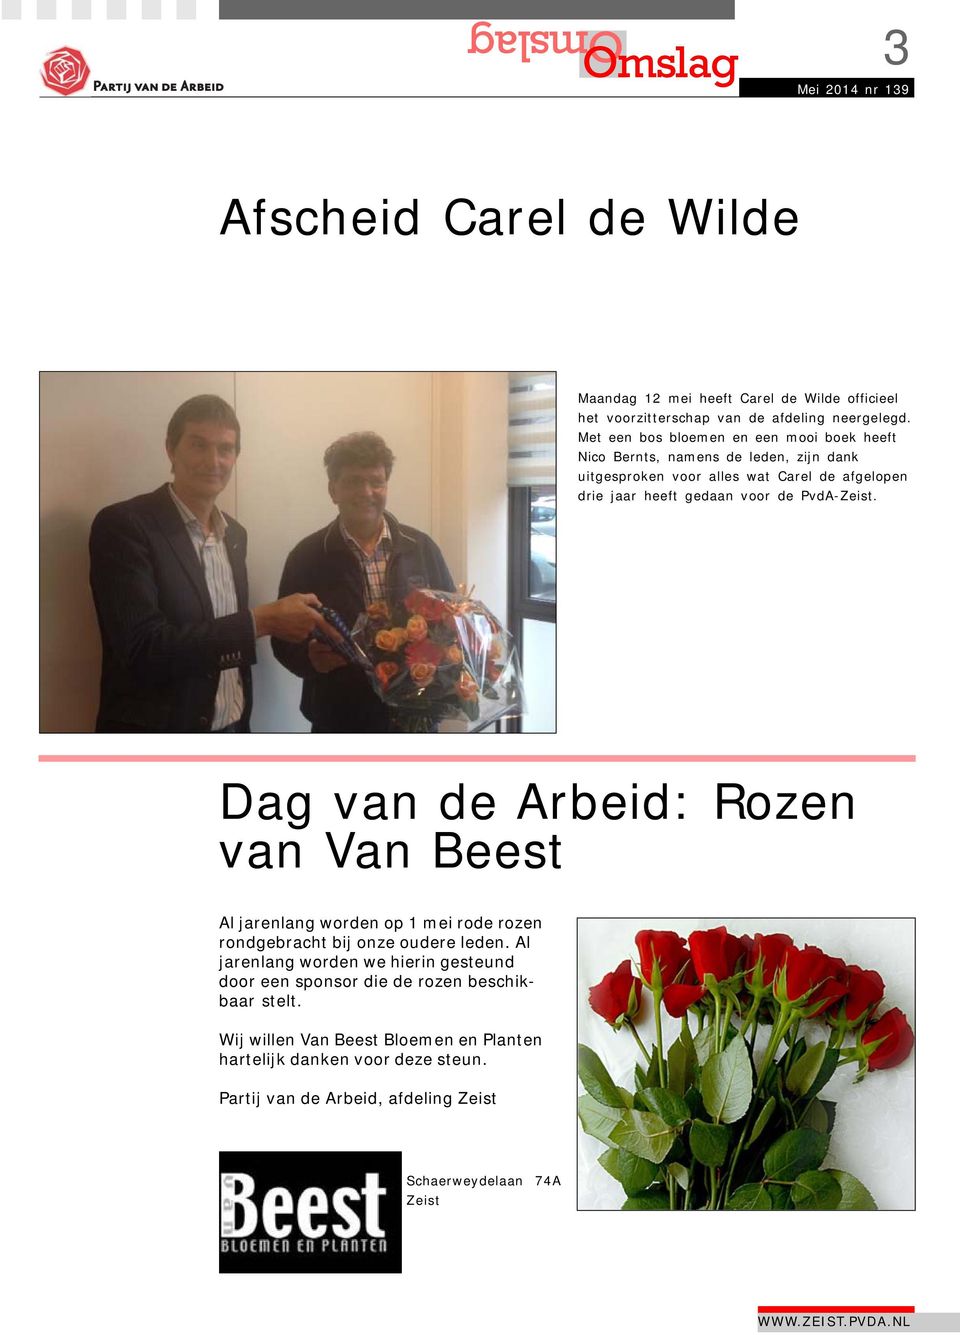 de PvdA-Zeist. Dag van de Arbeid: Rozen van Van Beest Al jarenlang worden op 1 mei rode rozen rondgebracht bij onze oudere leden.